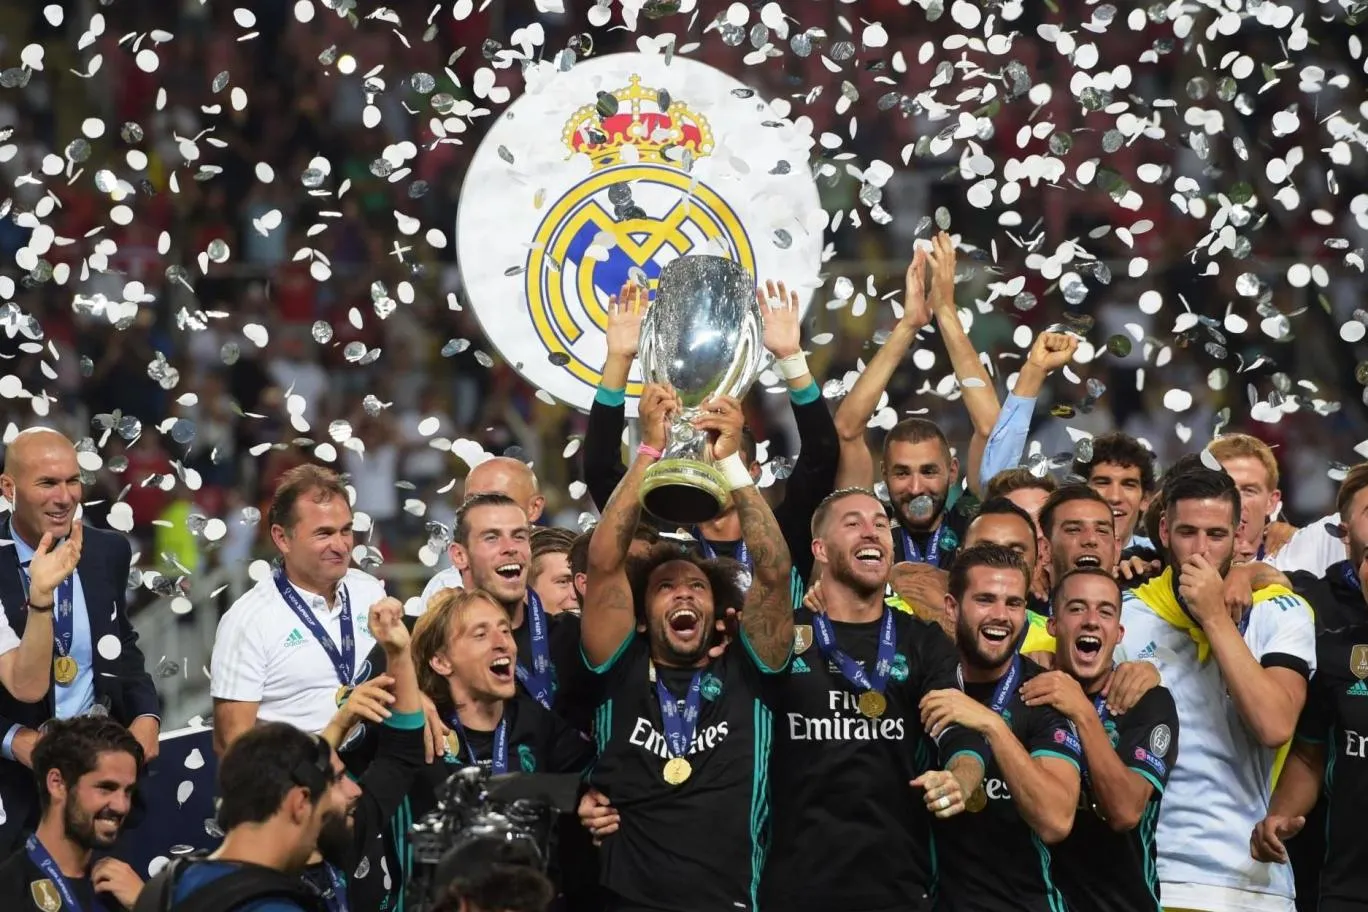 Cận cảnh cú ăn 5 thần thánh của Real Madrid trong năm 2017 - Bóng Đá